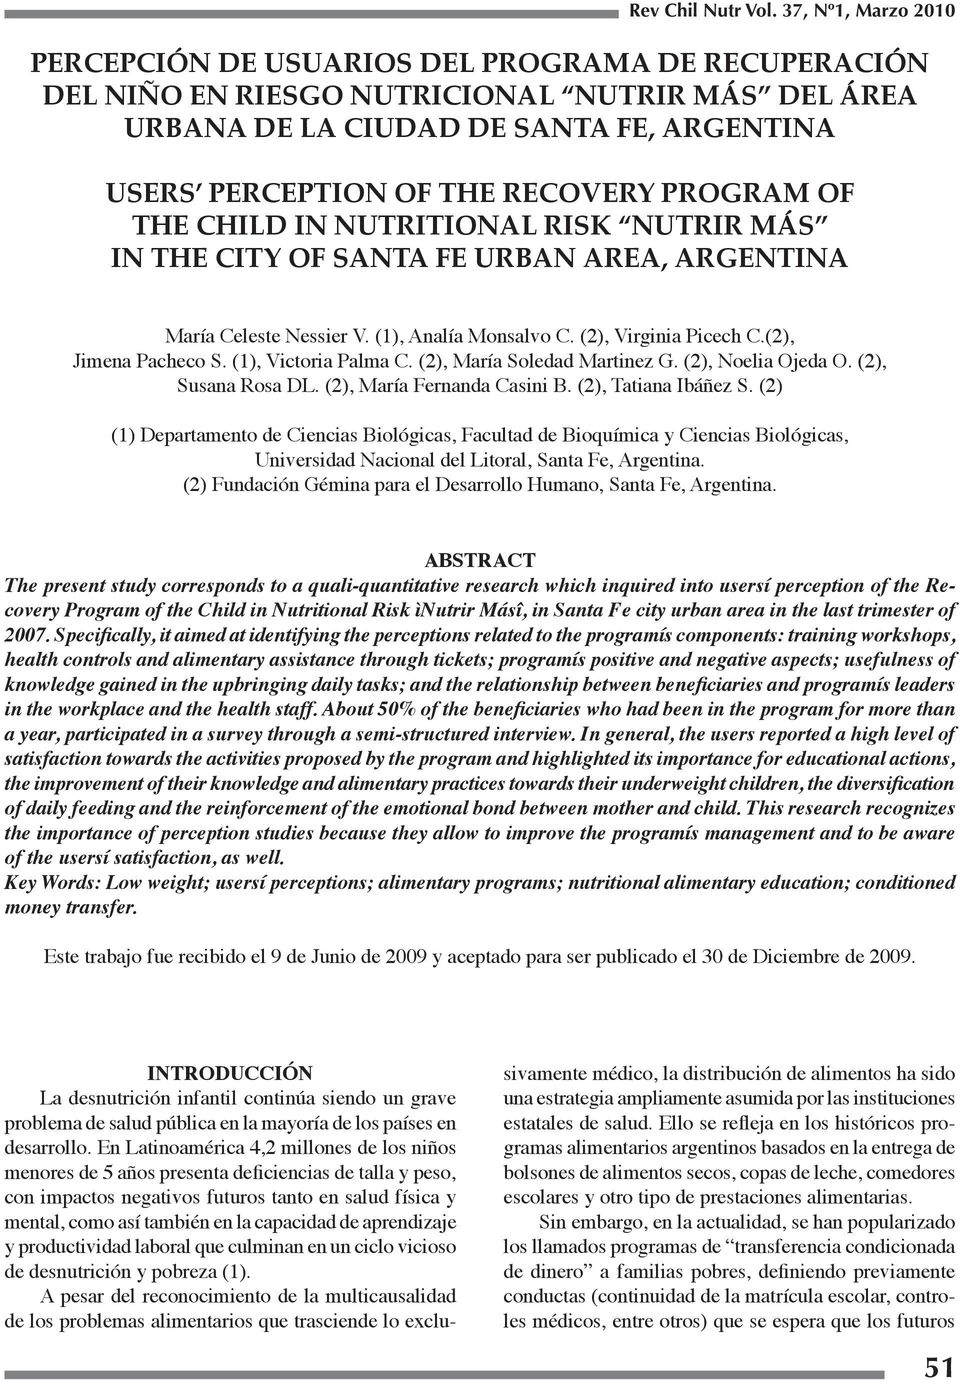 PROGRAM OF THE CHILD IN NUTRITIONAL RISK NUTRIR MÁS IN THE CITY OF SANTA FE URBAN AREA, ARGENTINA María Celeste Nessier V. (1), Analía Monsalvo C. (2), Virginia Picech C.(2), Jimena Pacheco S.